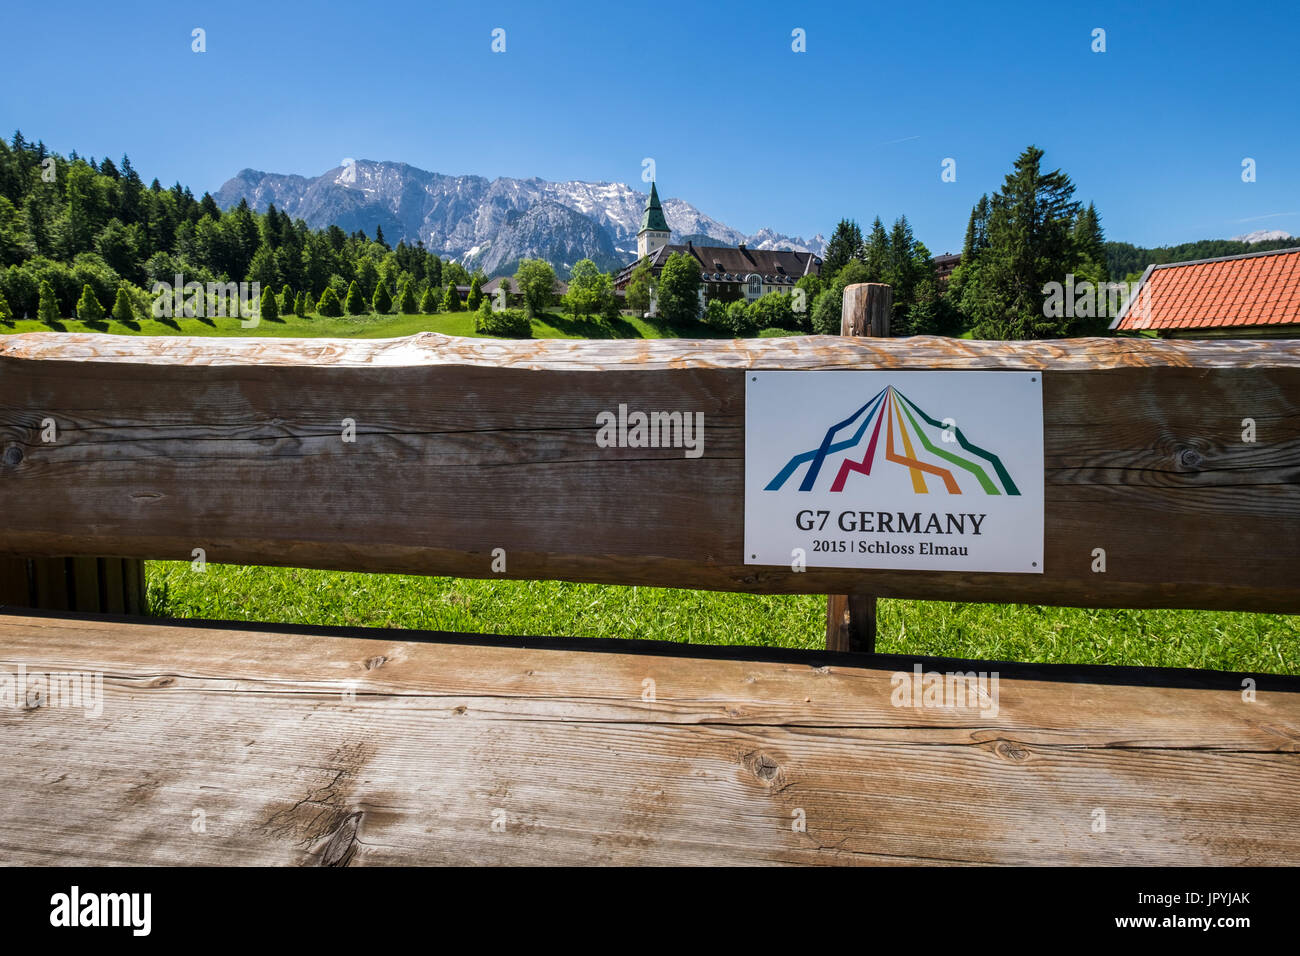 Schloss Elmau hotel,segno sulla panca in legno osservando la scena del vertice G7 2015, Baviera, Germania Foto Stock